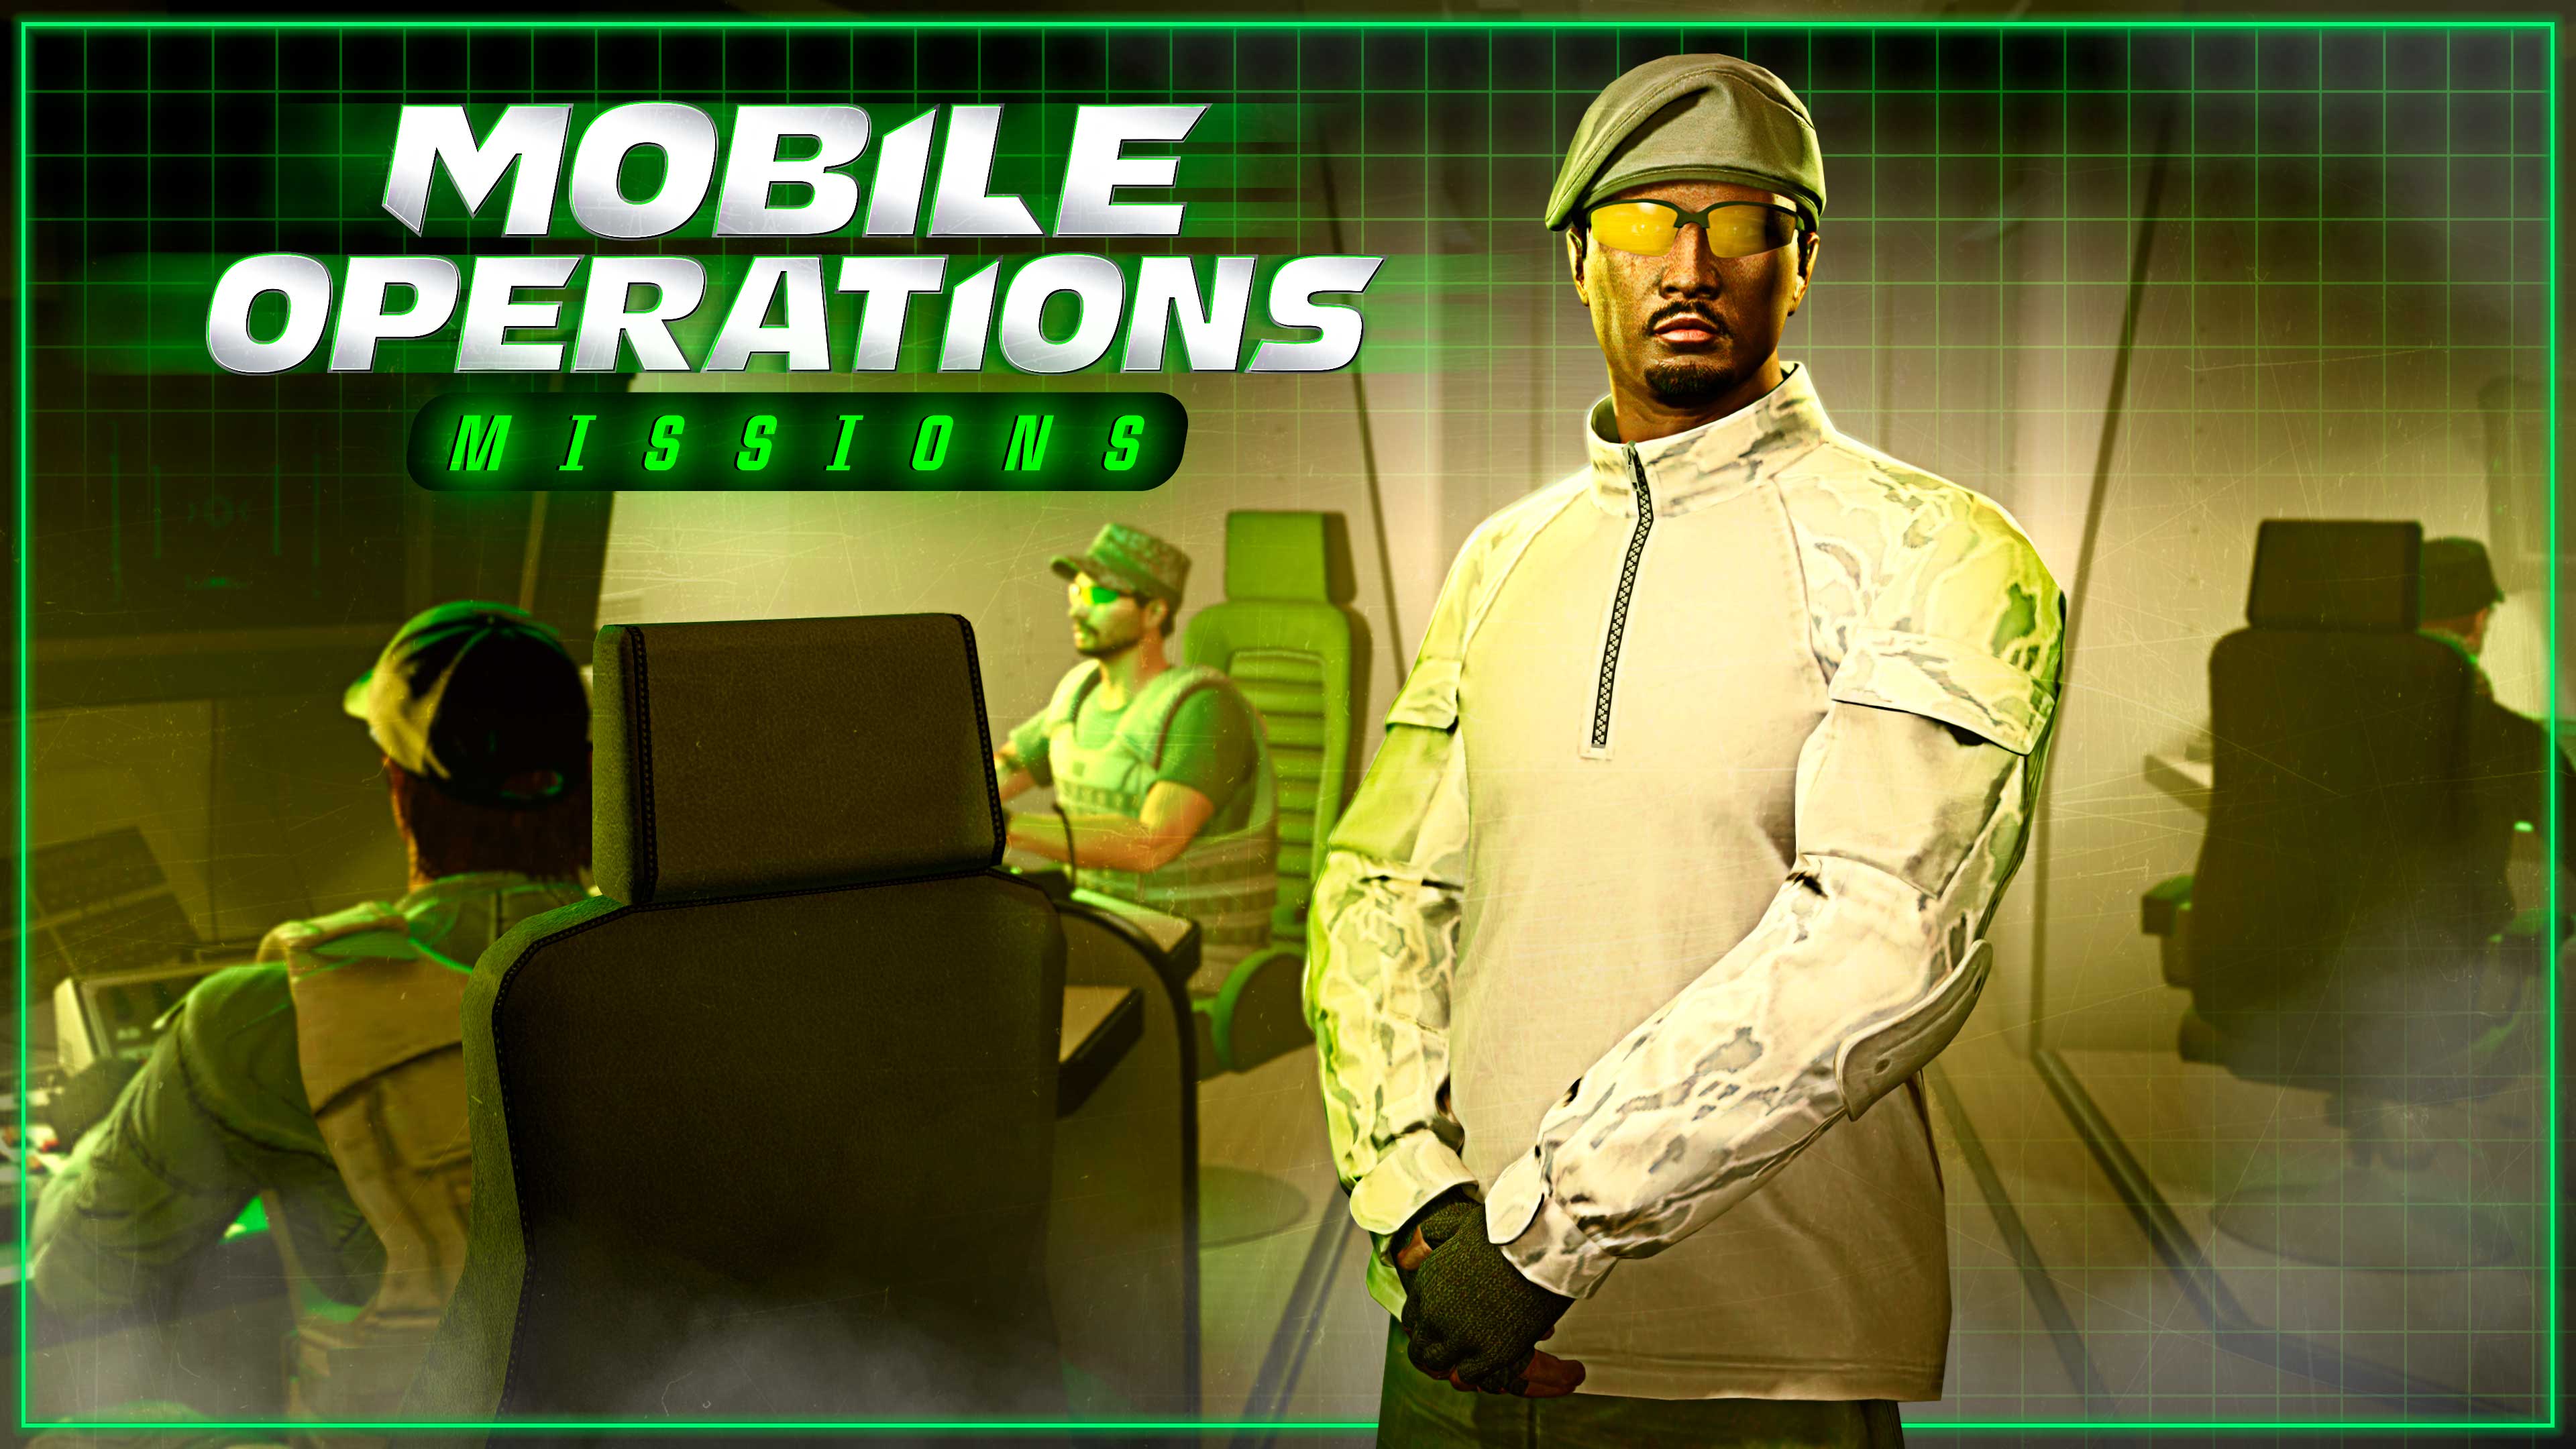 Personagens no GTA Online dentro de um Centro de Operações Móvel com o logo de missões de Operaçoes Móveis